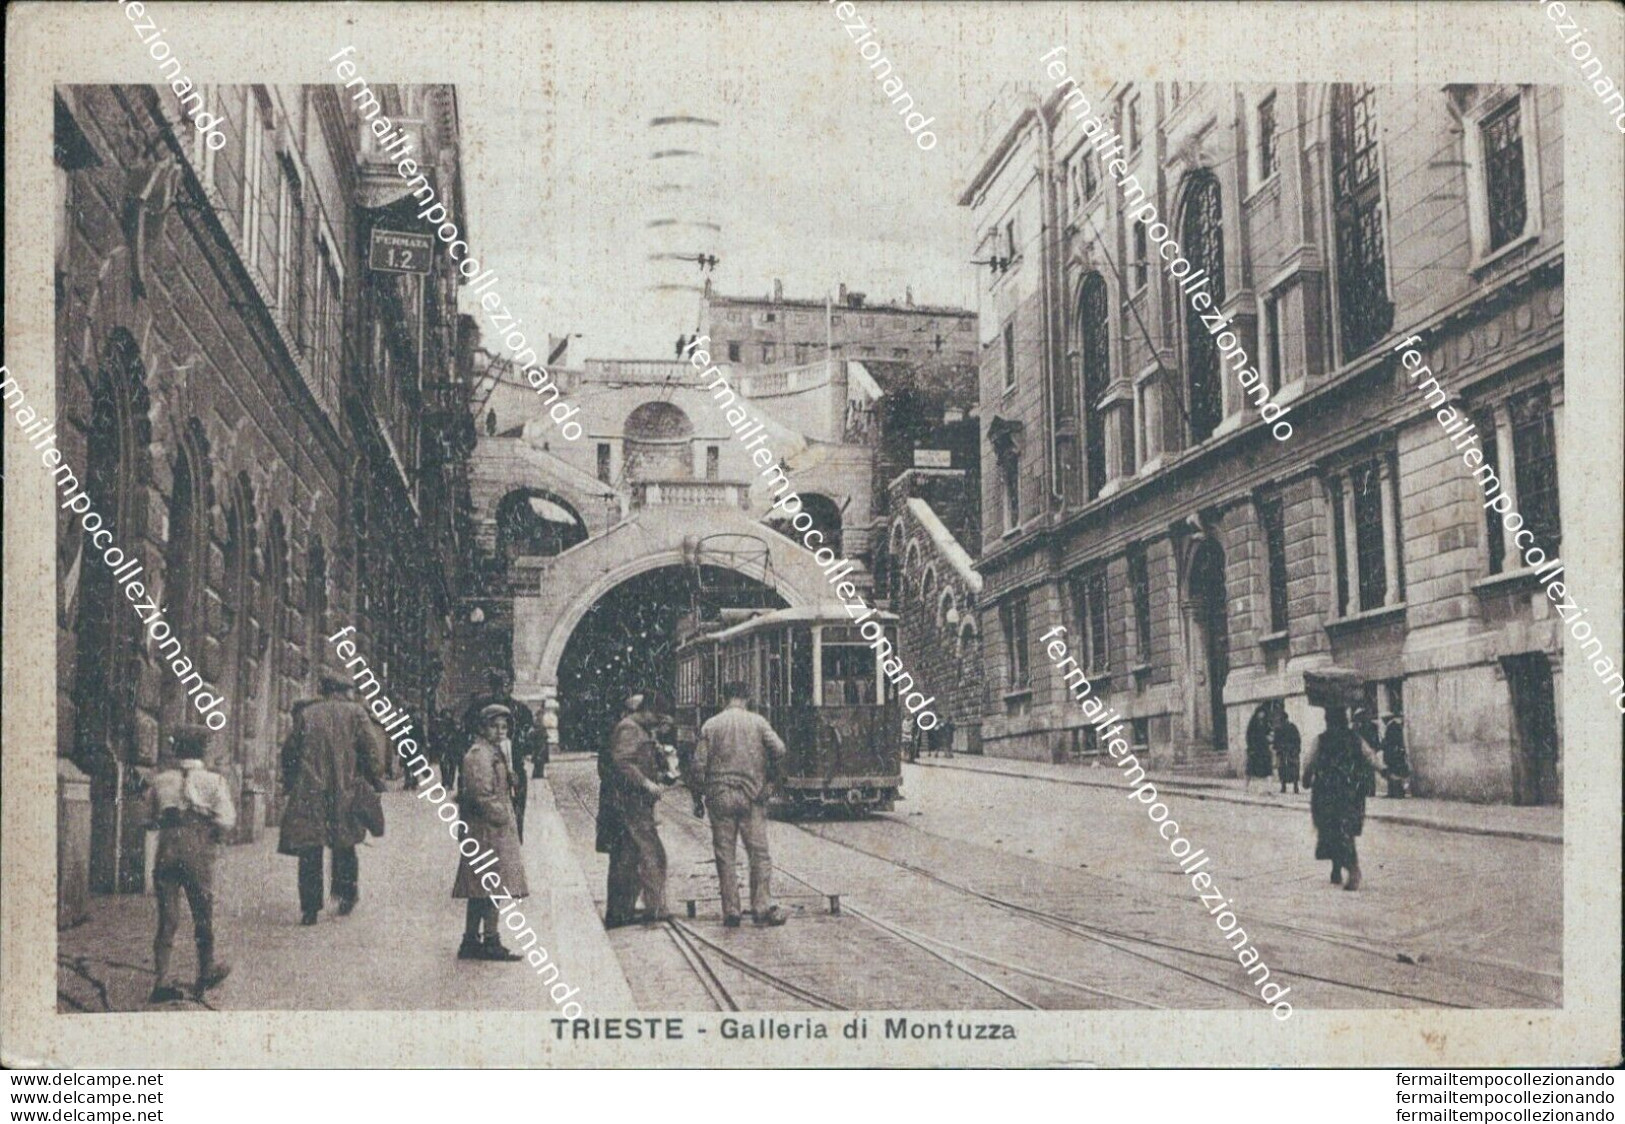 Bc65 Cartolina Trieste Galleria Di Montuzza Tram 1932 - Trieste (Triest)